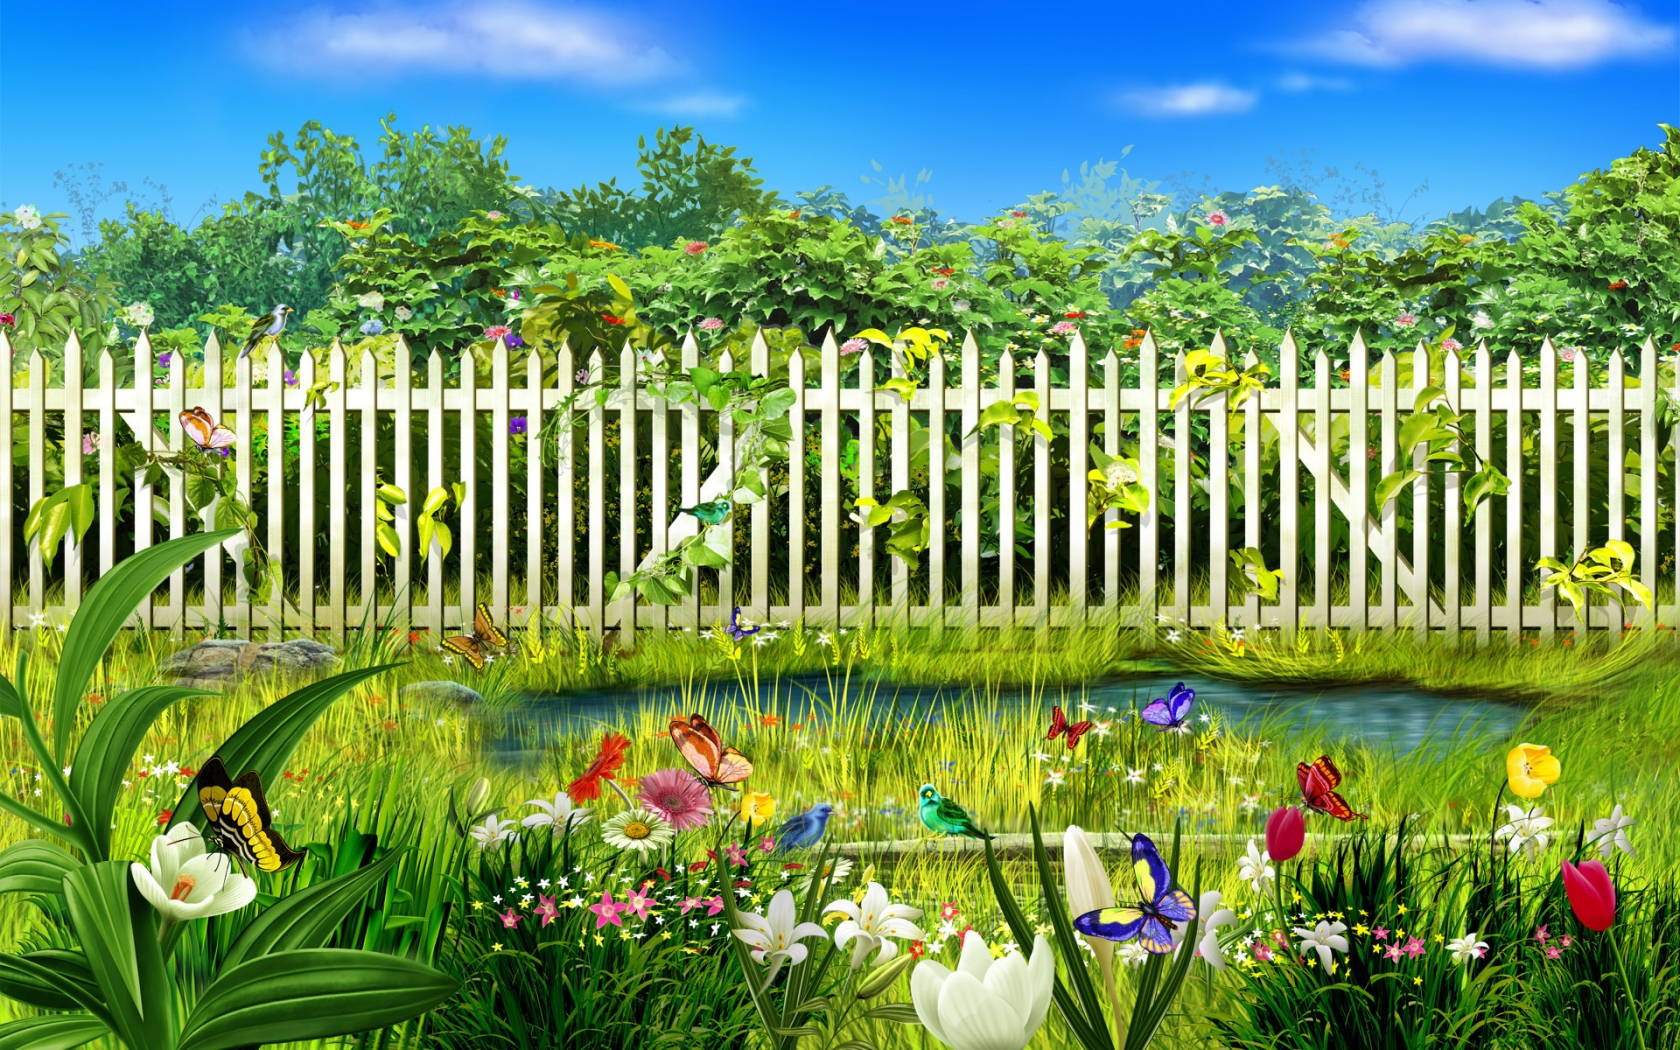 Spring garden for 1680 x 1050 widescreen resolution